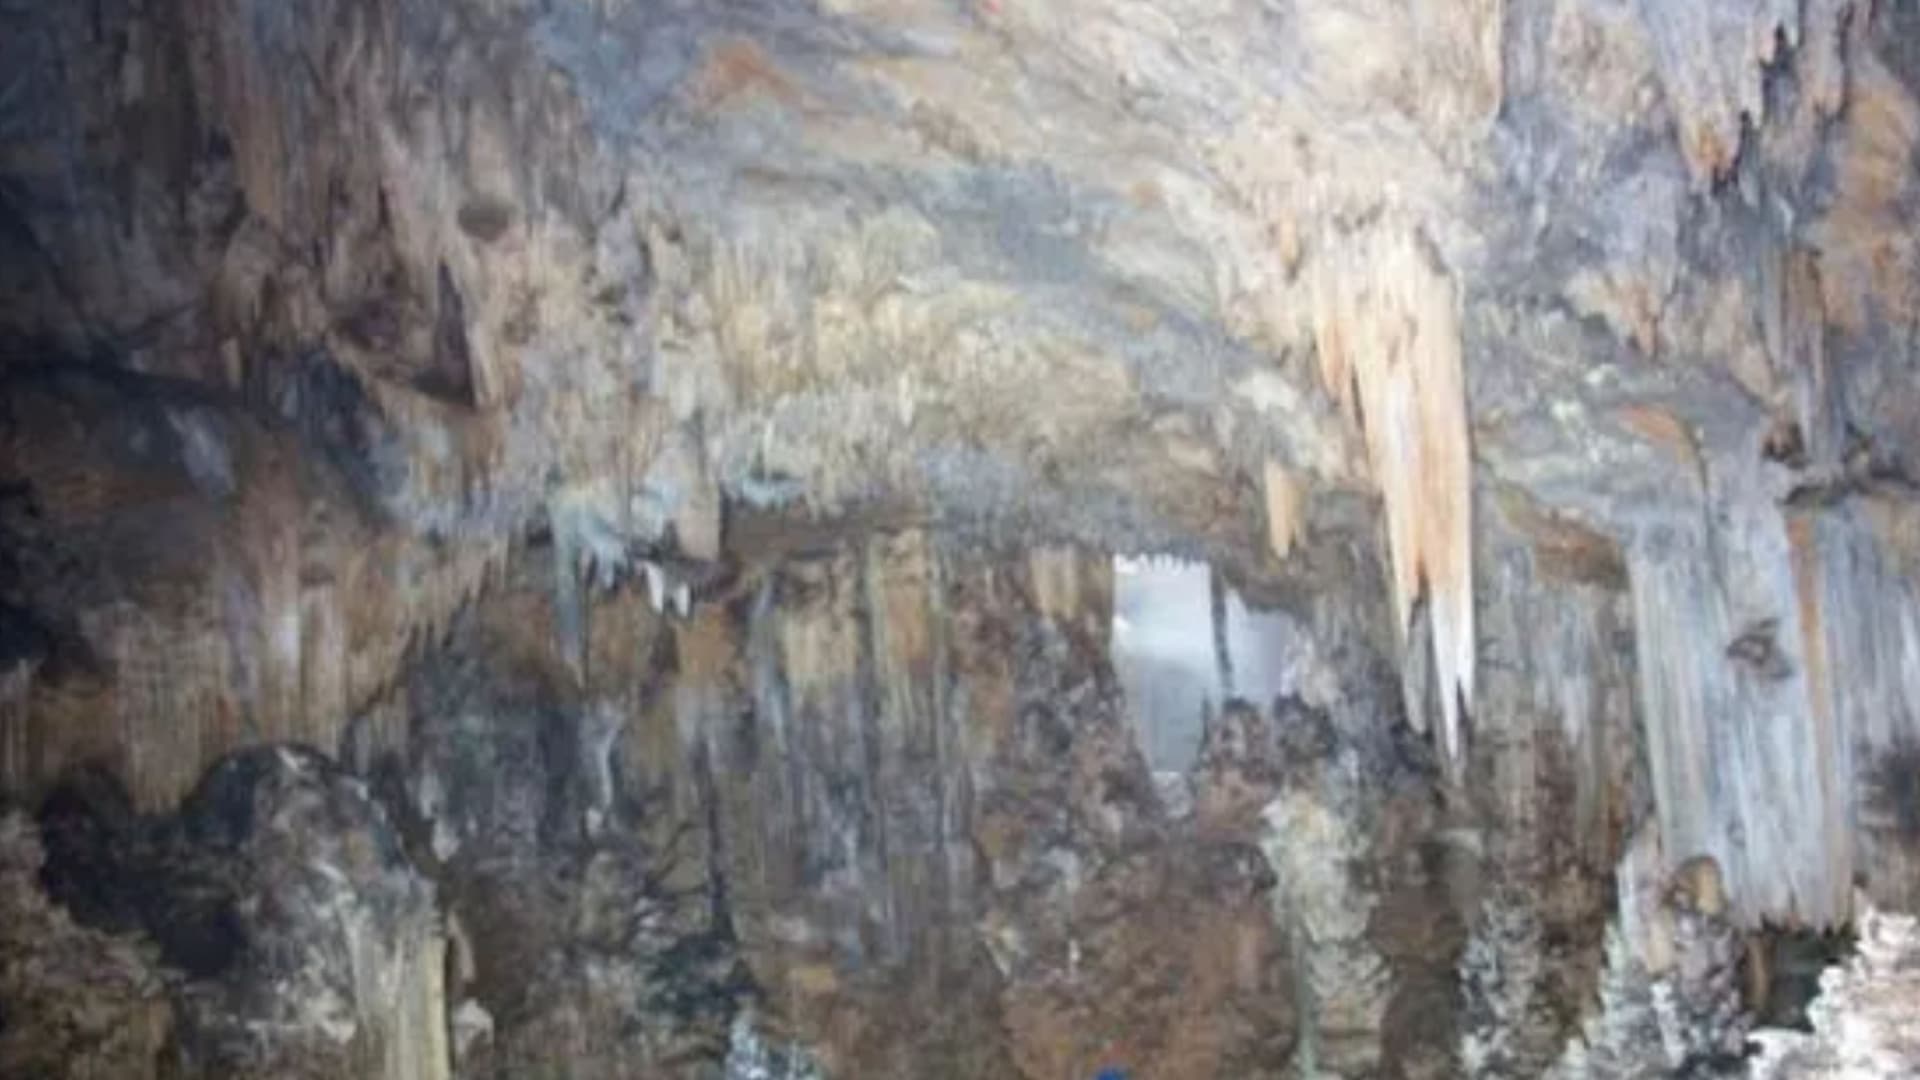 Descubrimiento de terror en ‘Midnight Terror Cave’ donde se encontraron 118 víctimas de sacrificio